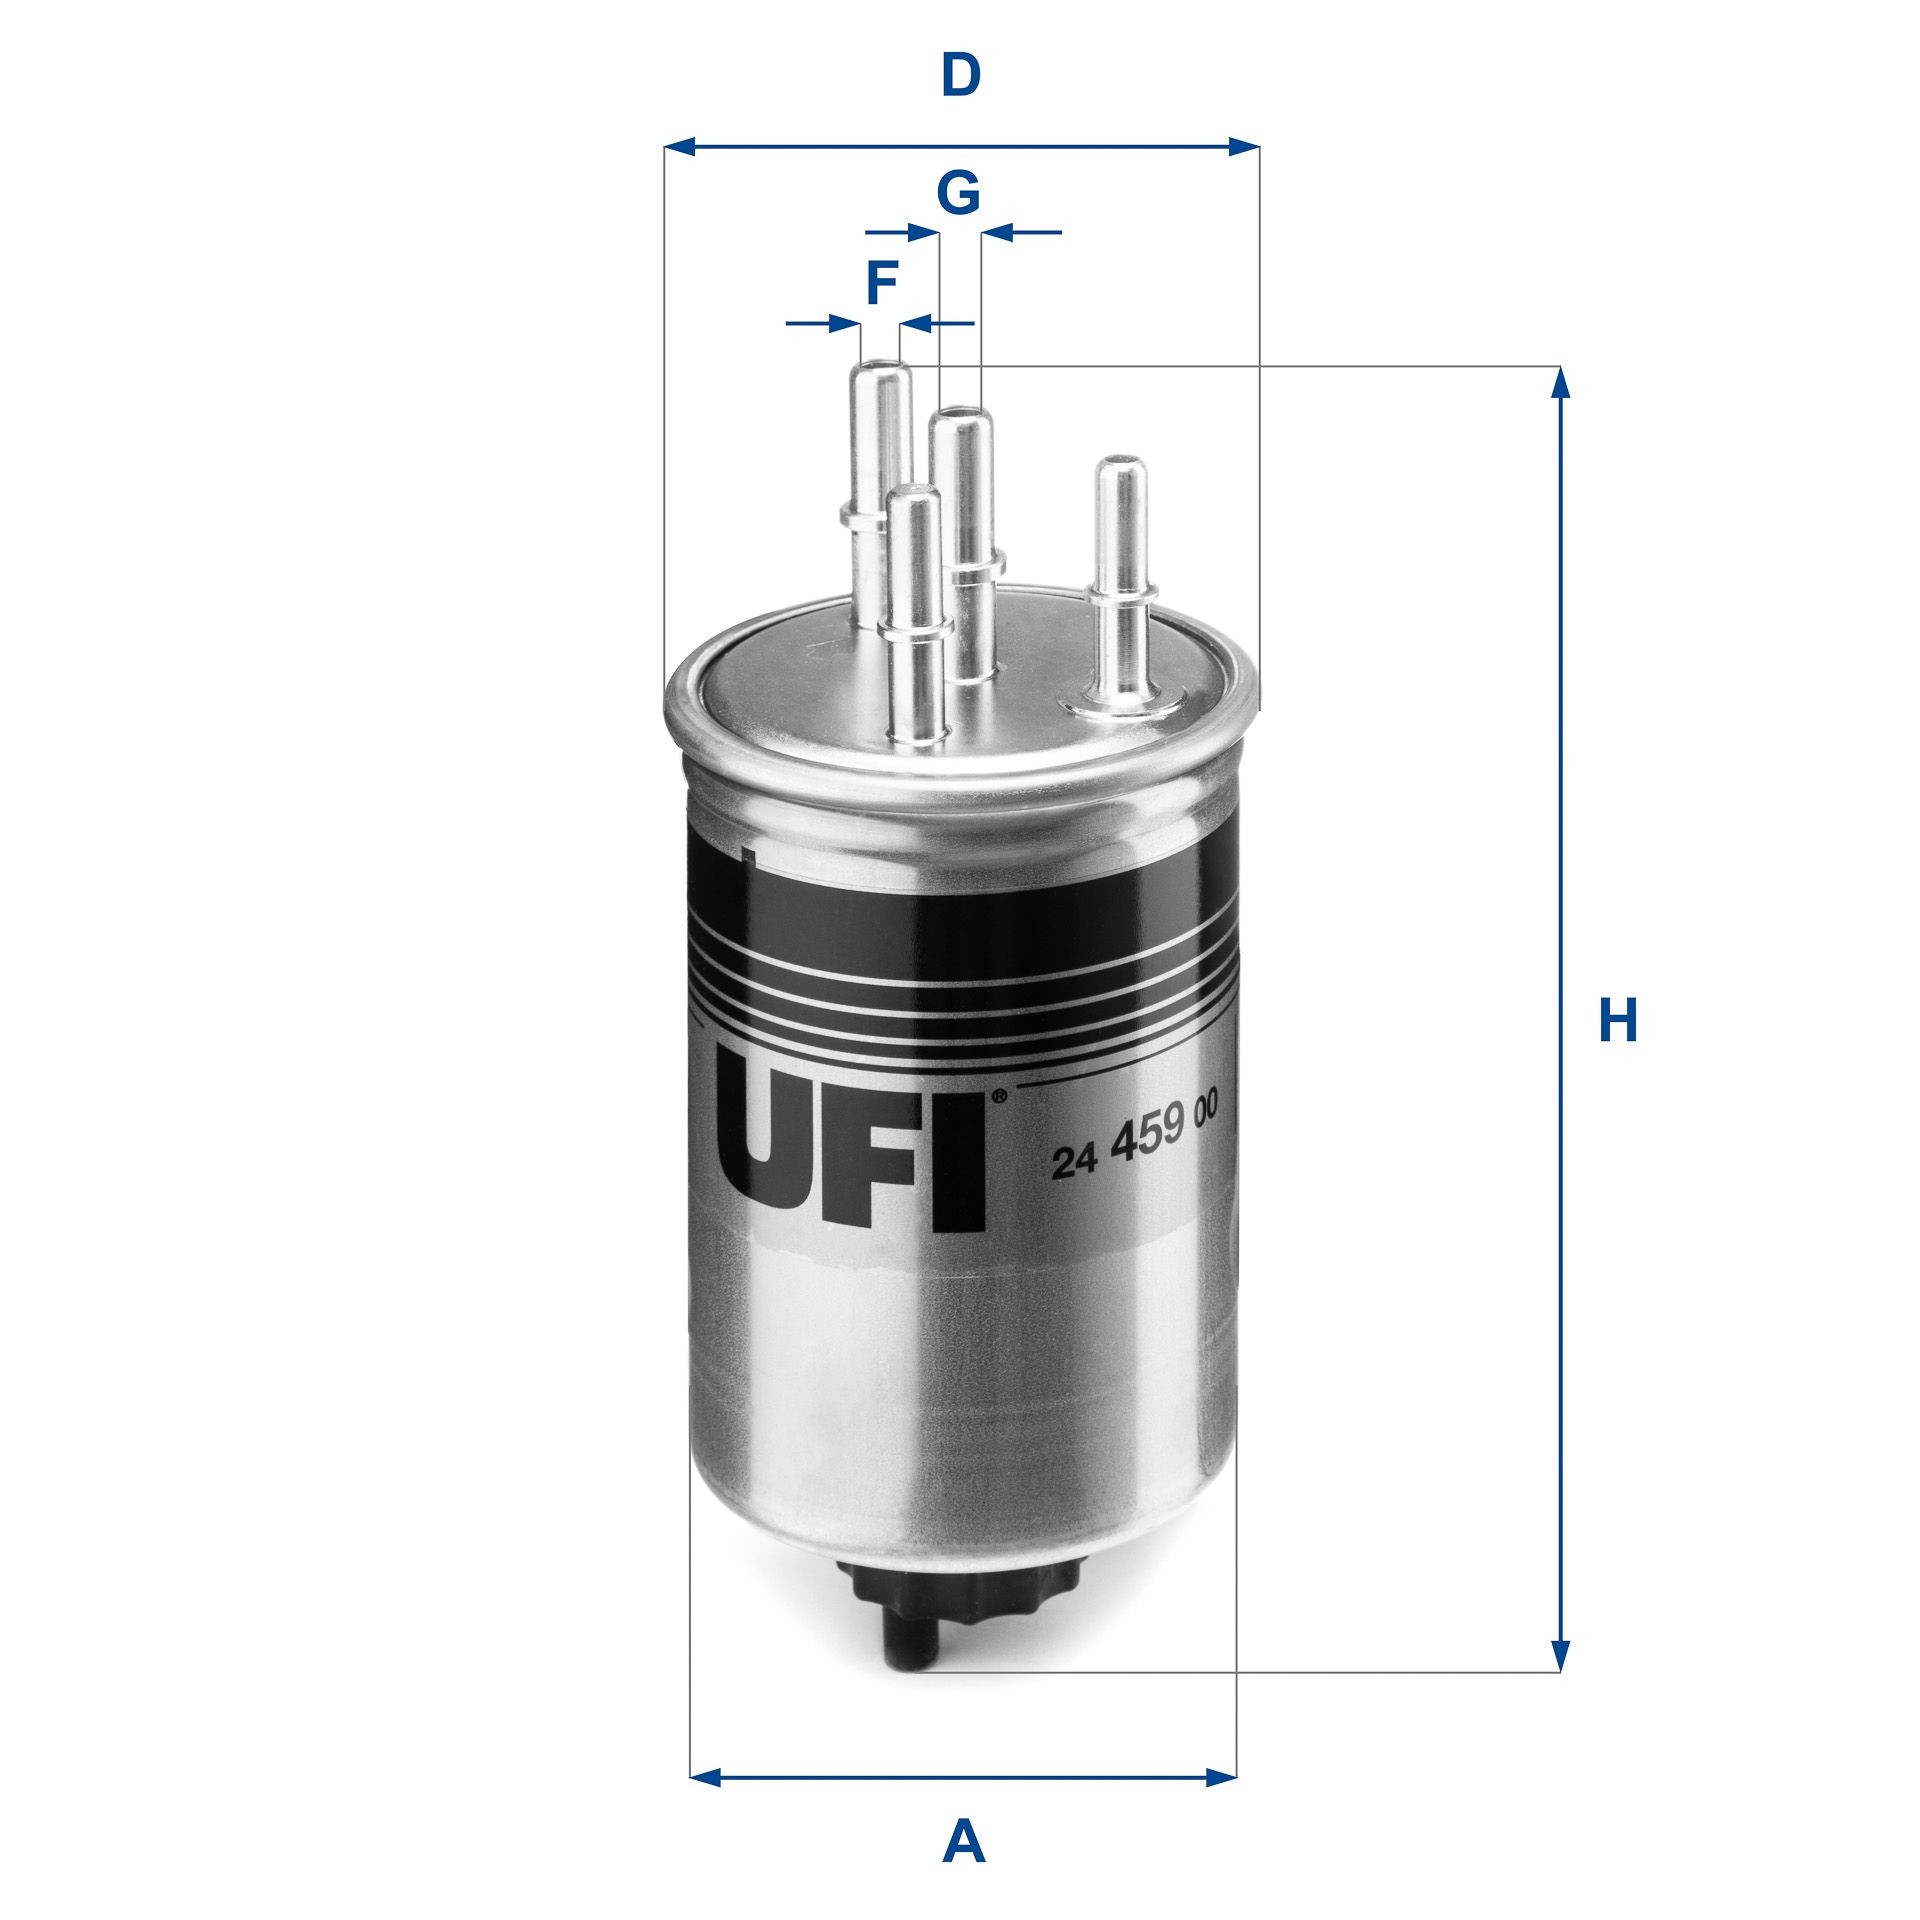 UFI 24.459.00 Fuel filter Filter Insert, 10mm, 10mm